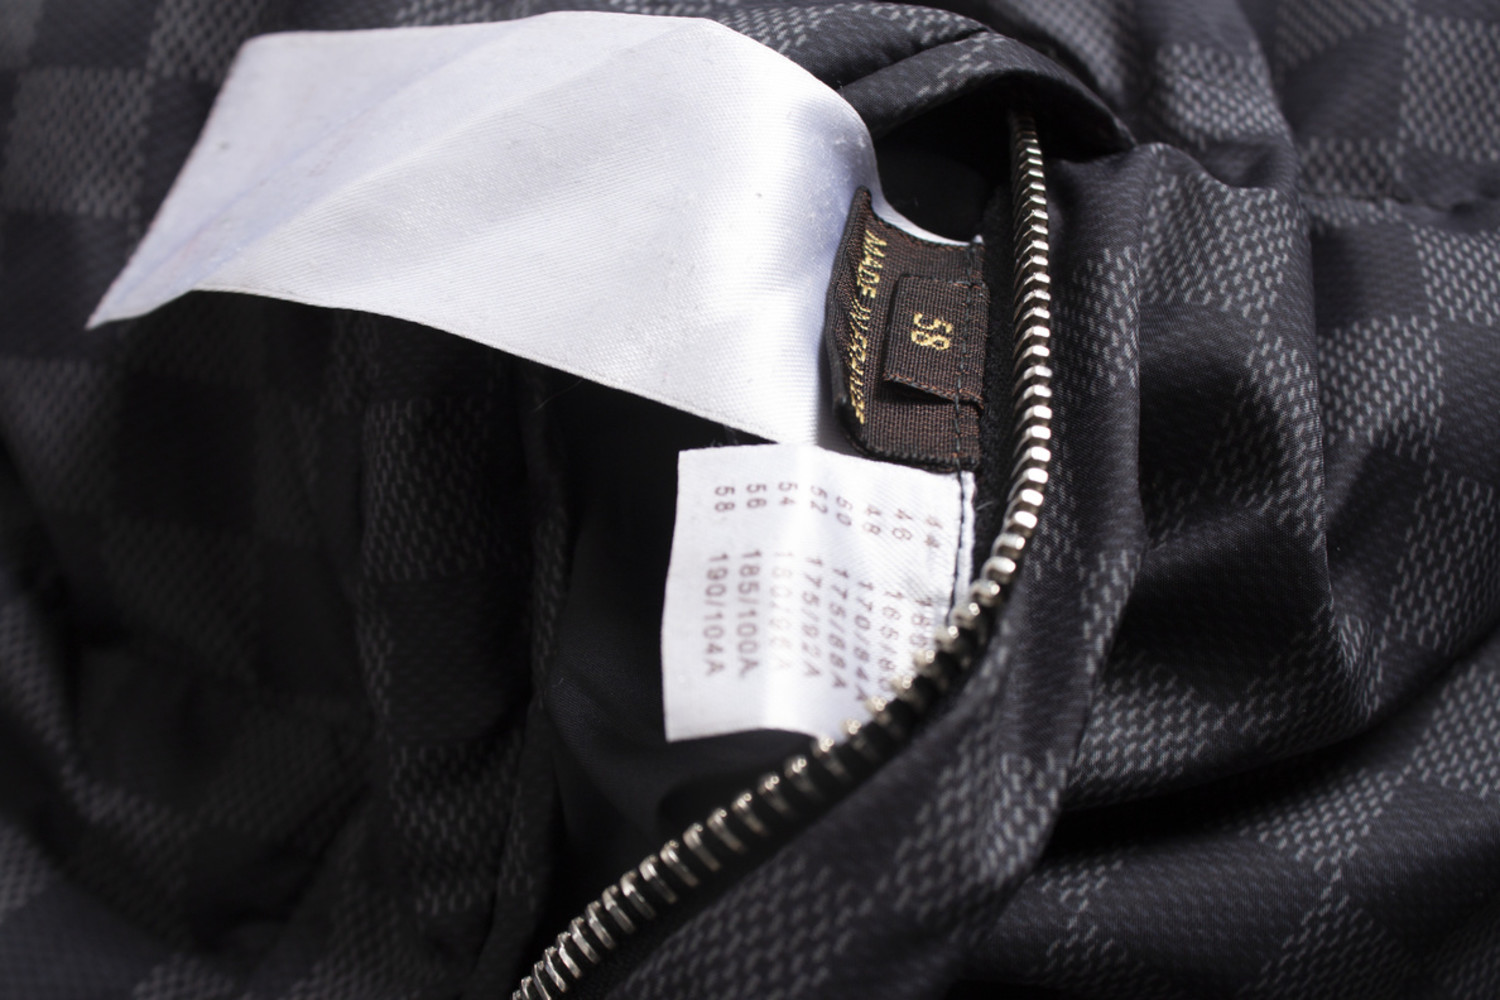 RichGear — Classic Louis Vuitton Vest